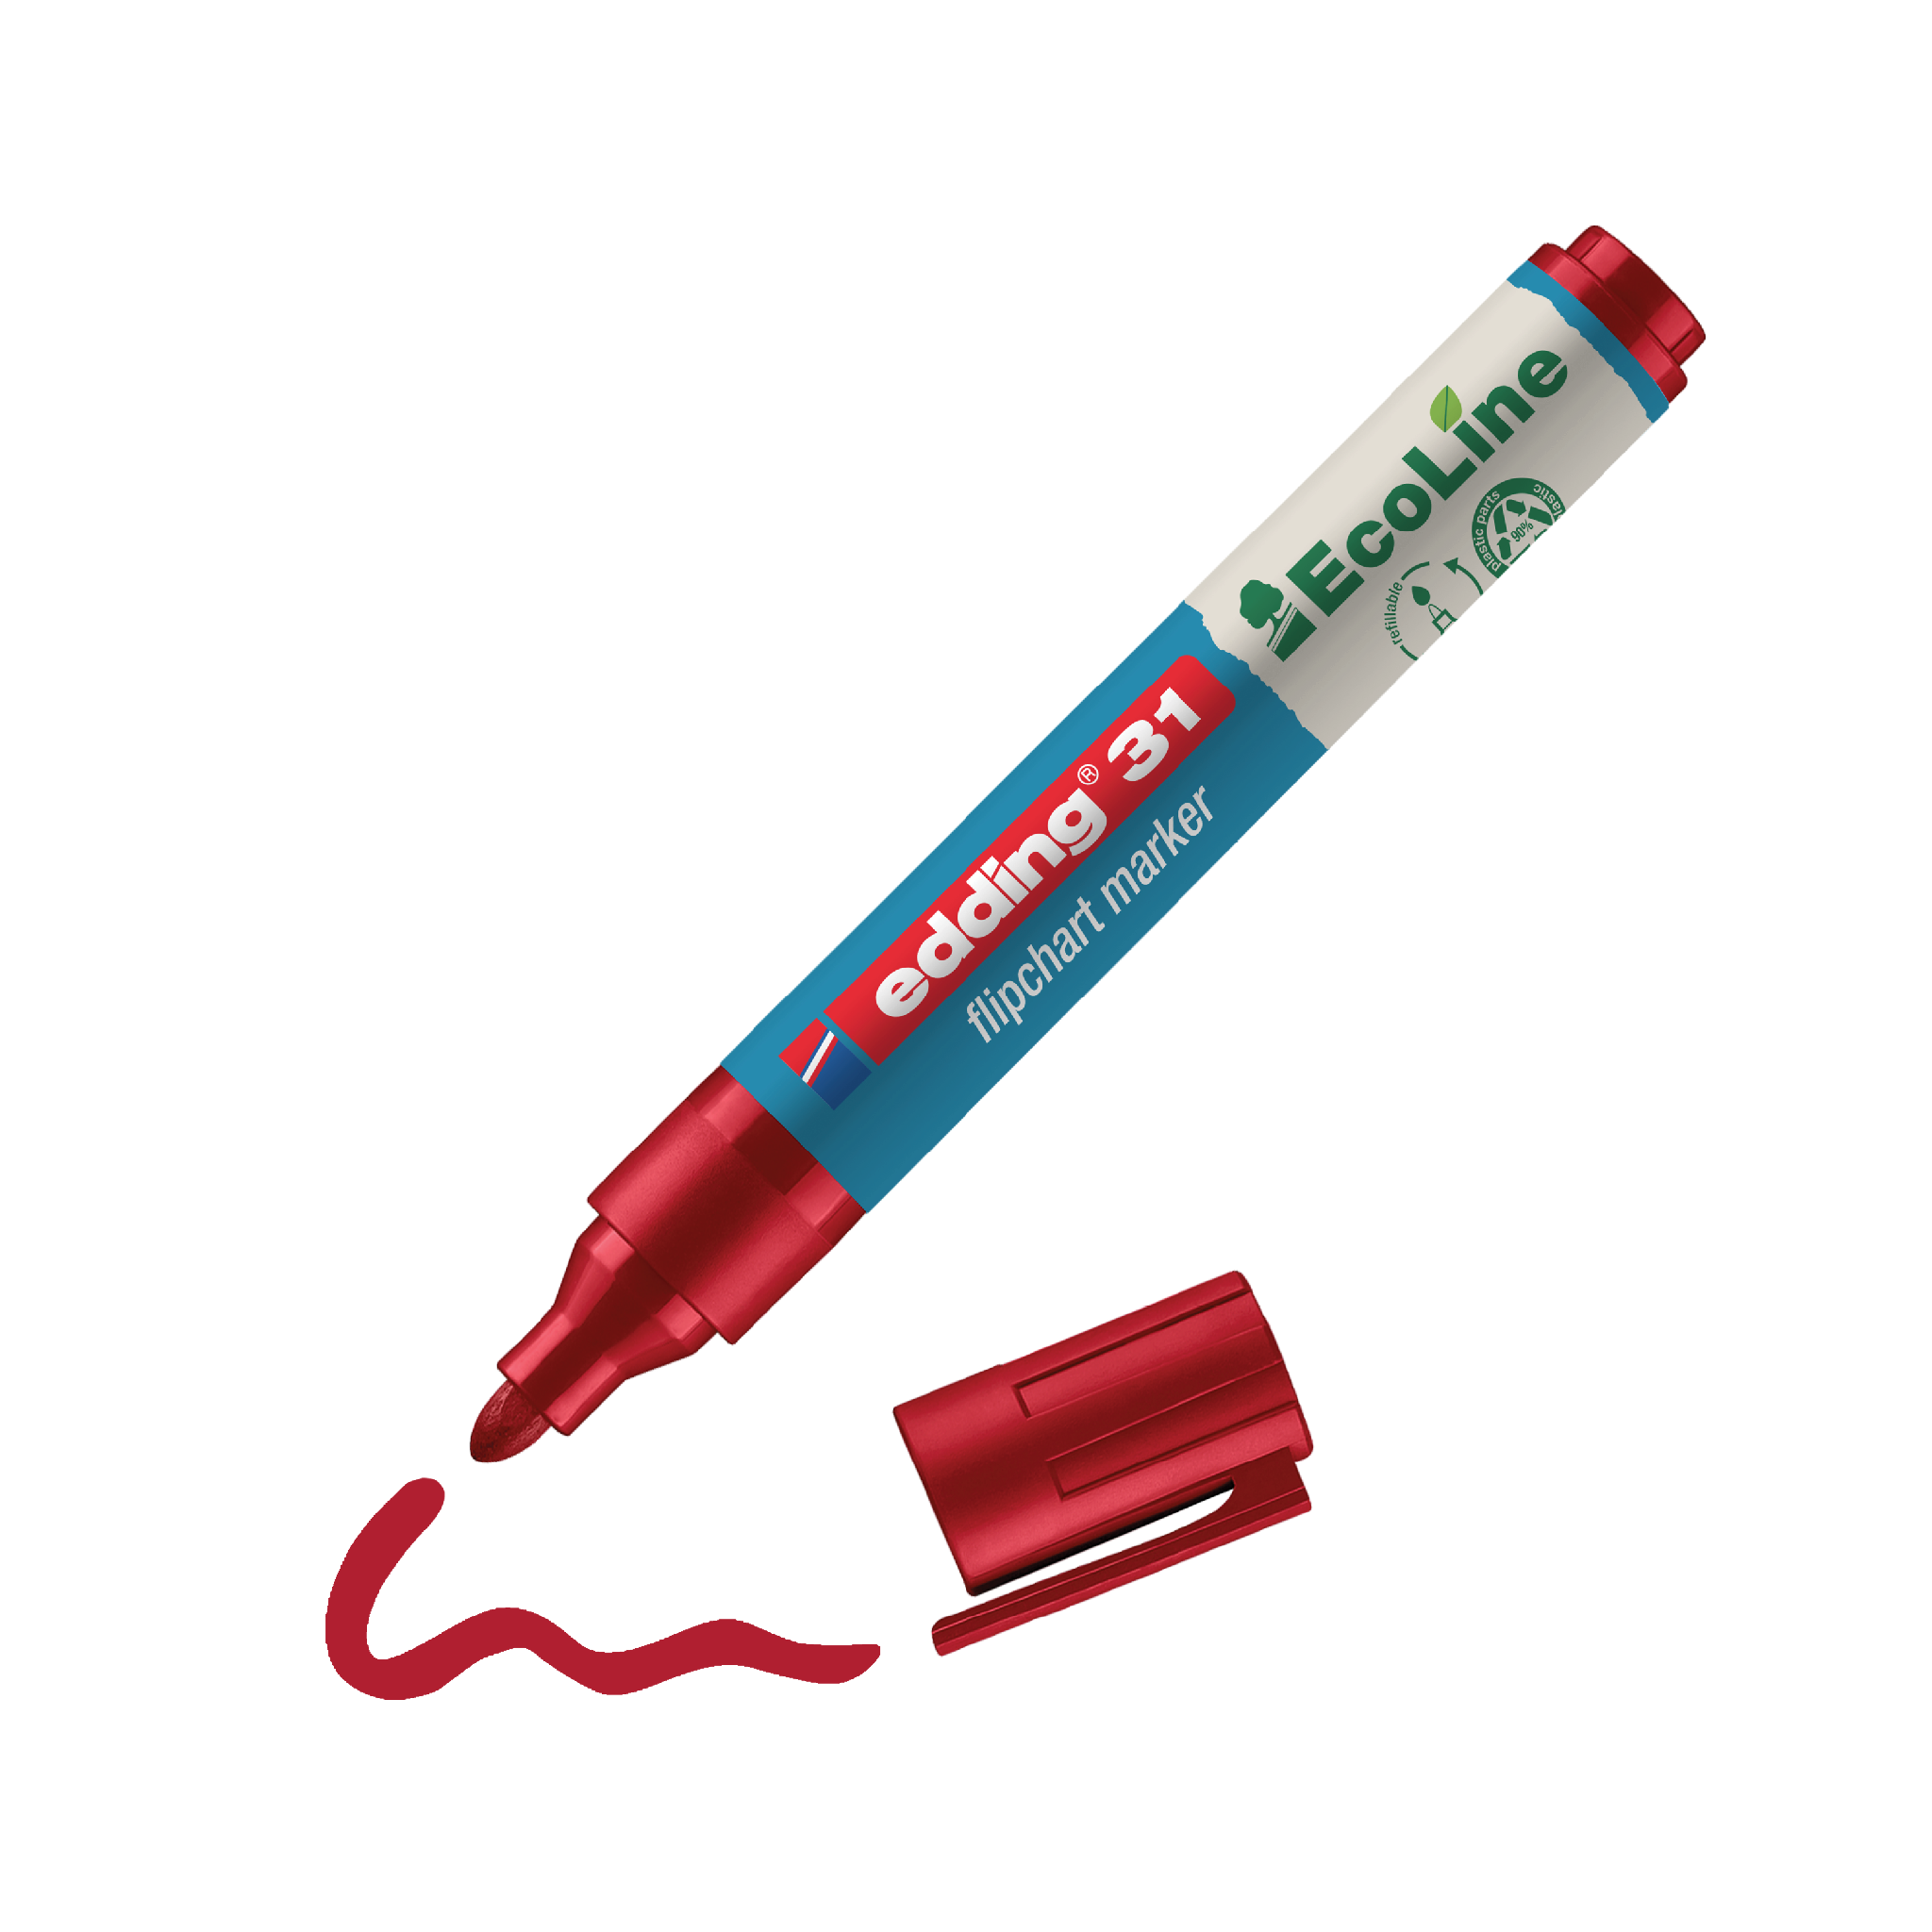 Ein roter edding 31 EcoLine Flipchartmarker mit abgenommener Kappe und einer gezeichneten Linie darunter, die die Farbe des Markers angibt.